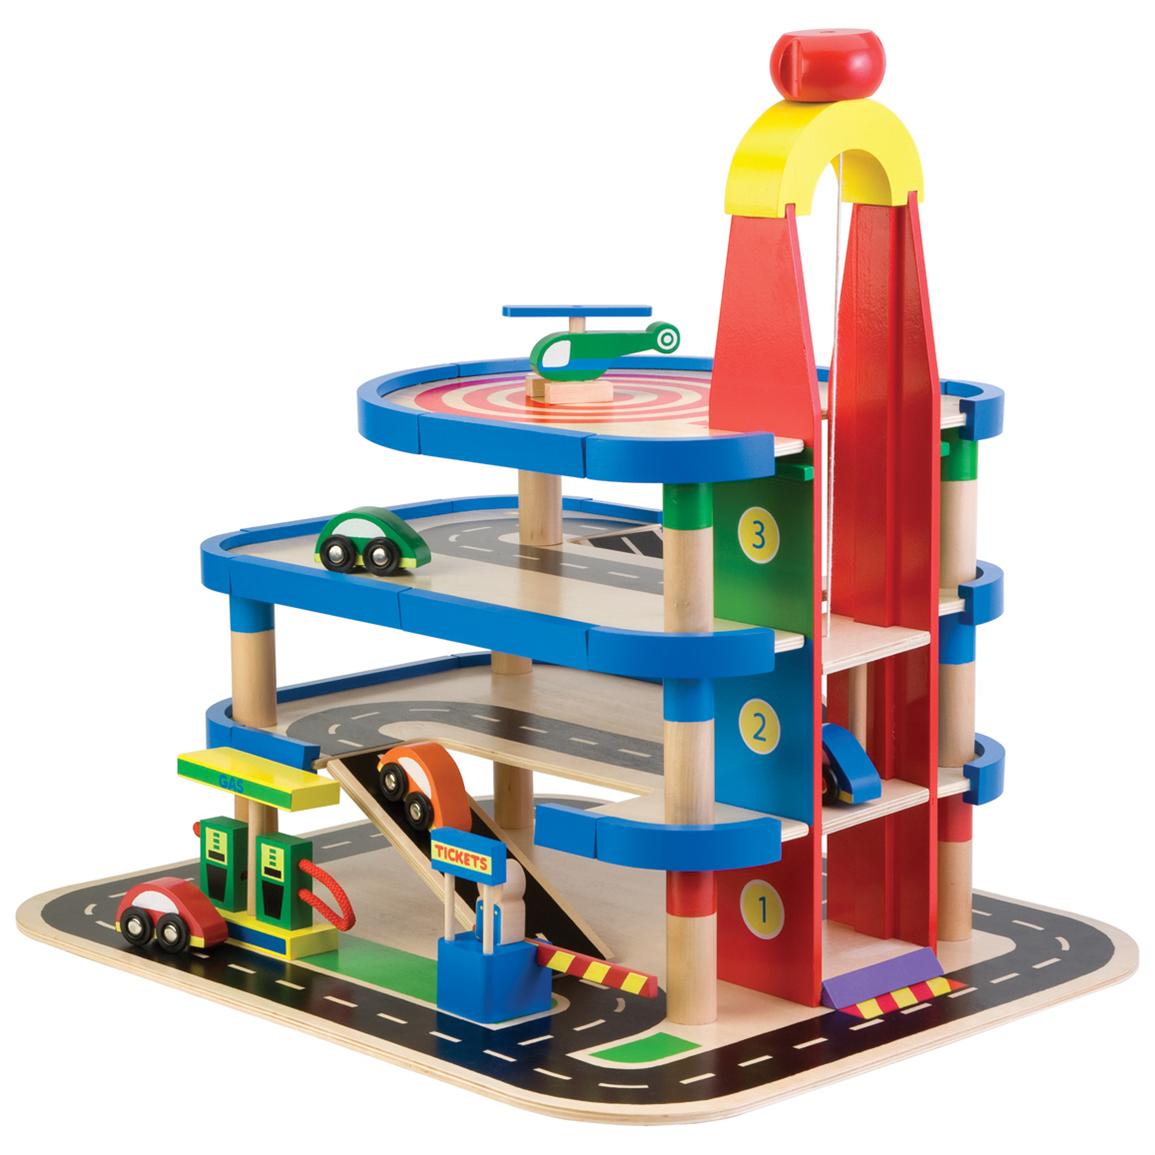 Children's Wooden Toy Parking Garage from Alex® - 213526 ...